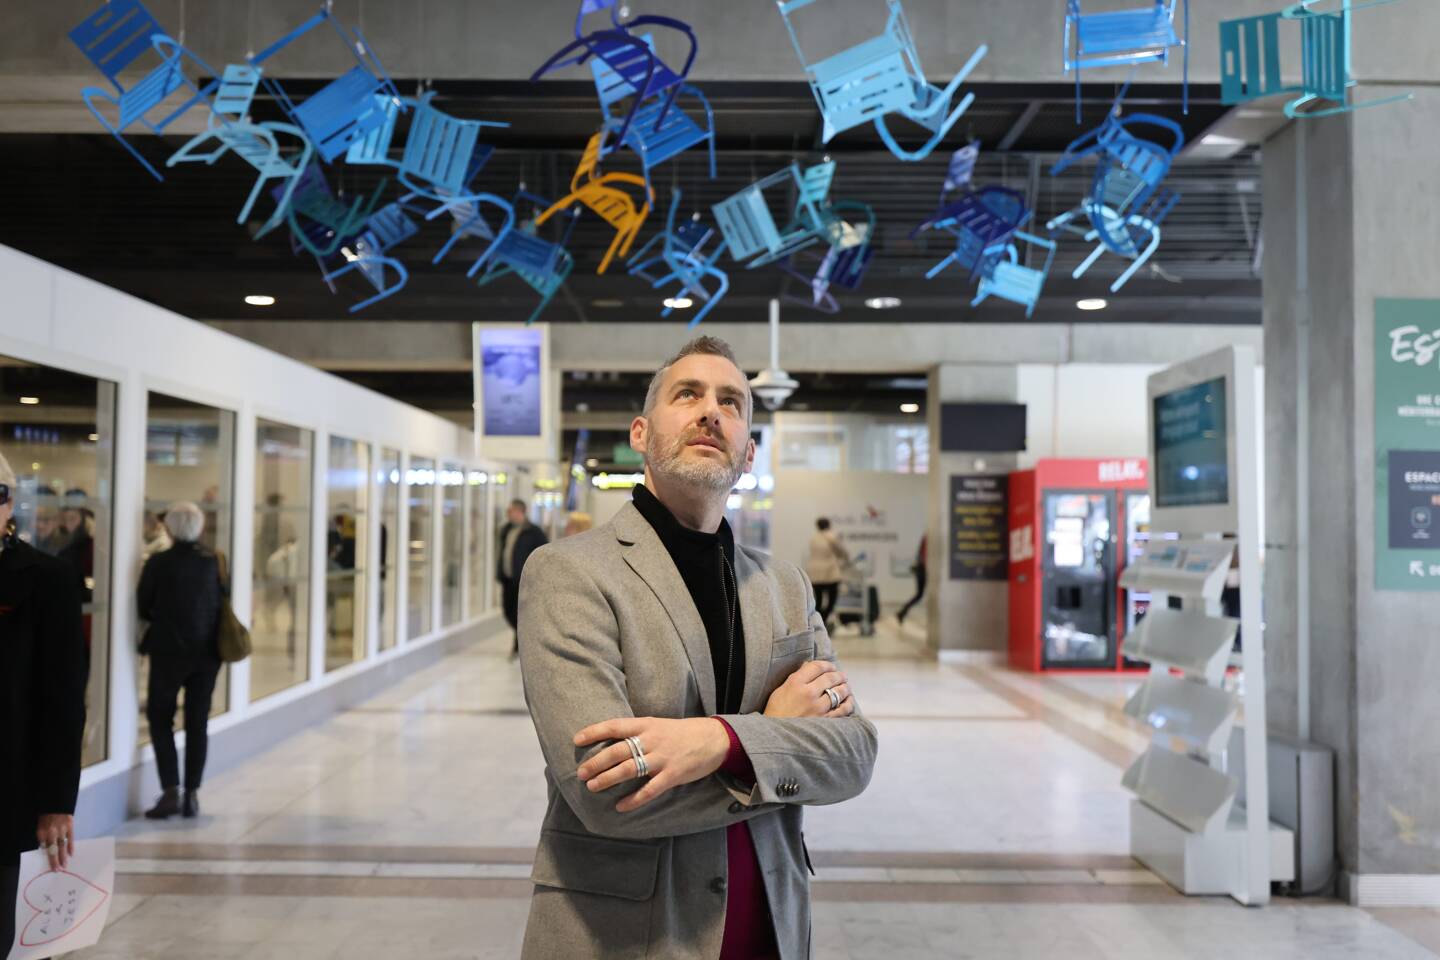 L’artiste niçois Sébastien Di Natale fait voler les chaises bleues à l’arrivée du terminal 2. (Photo Sébastien Botella)